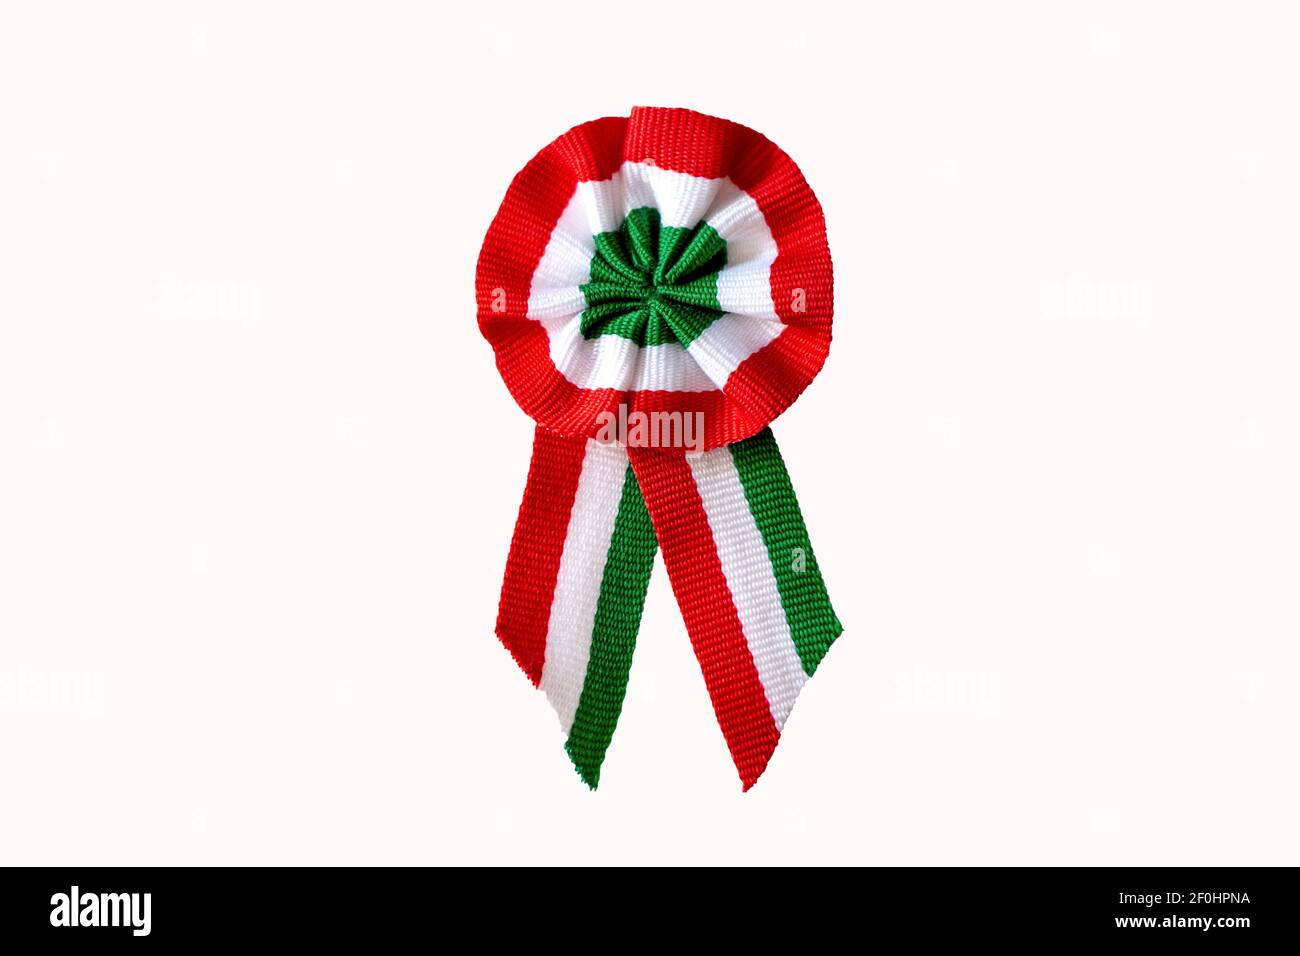 isolé sur rosette tricolore blanche sur arbre de printemps avec bourgeon symbole de la journée nationale hongroise le 15 mars Banque D'Images